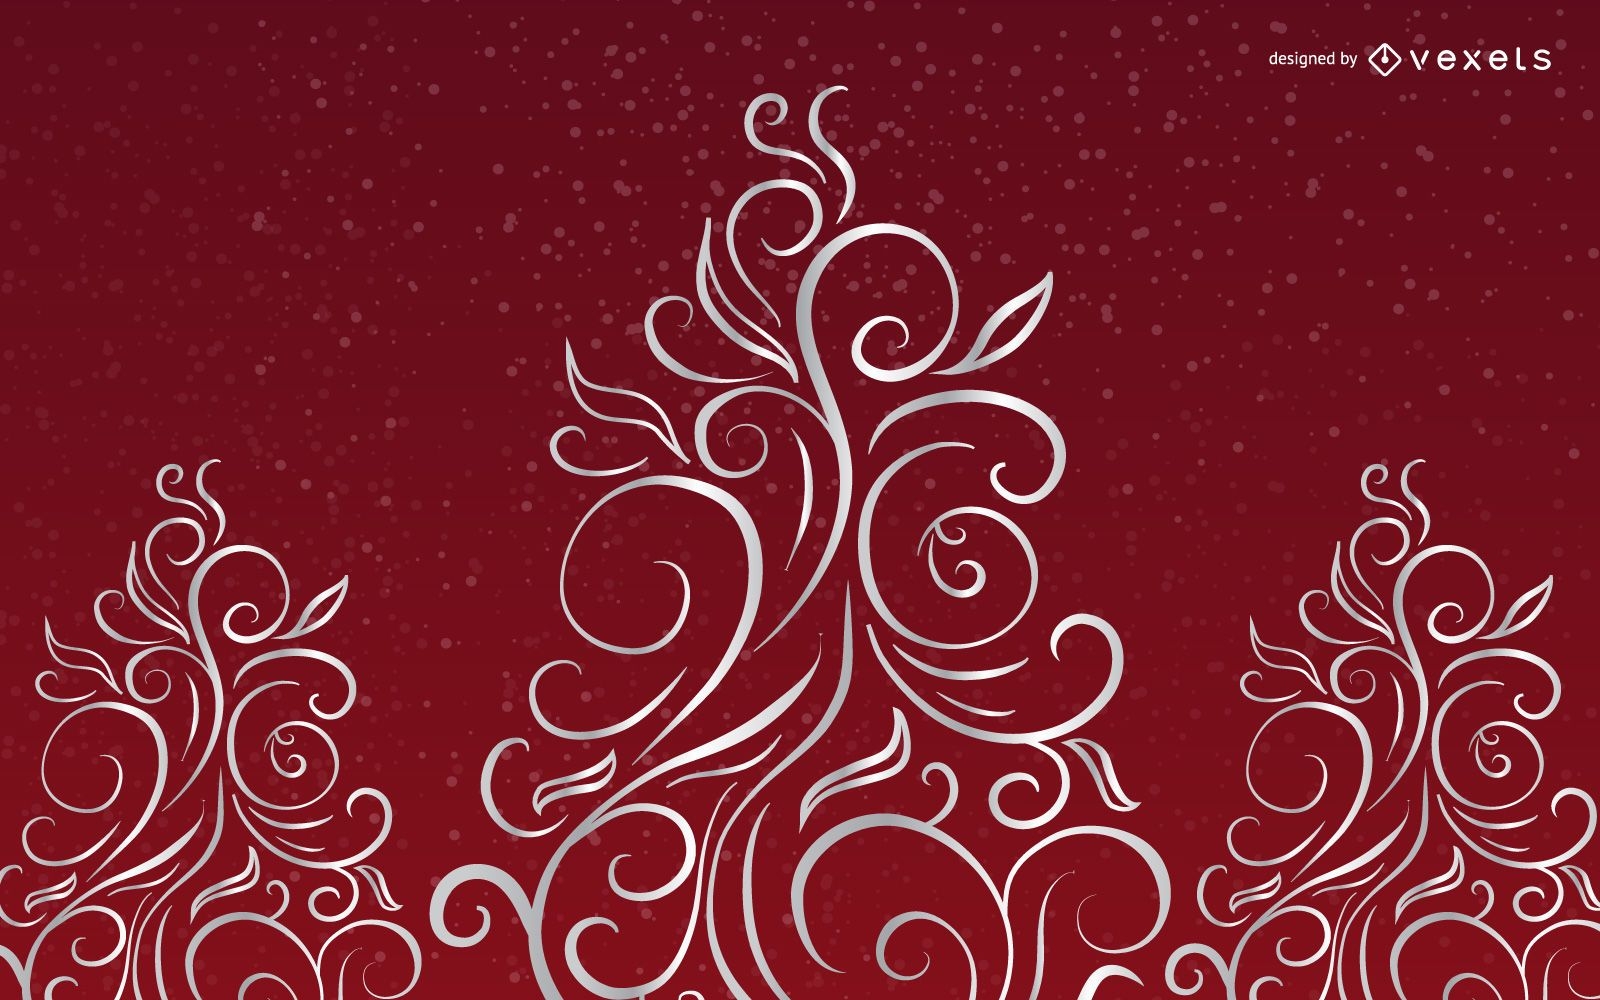 Brilhantes curvas criativas em forma de árvore de Natal